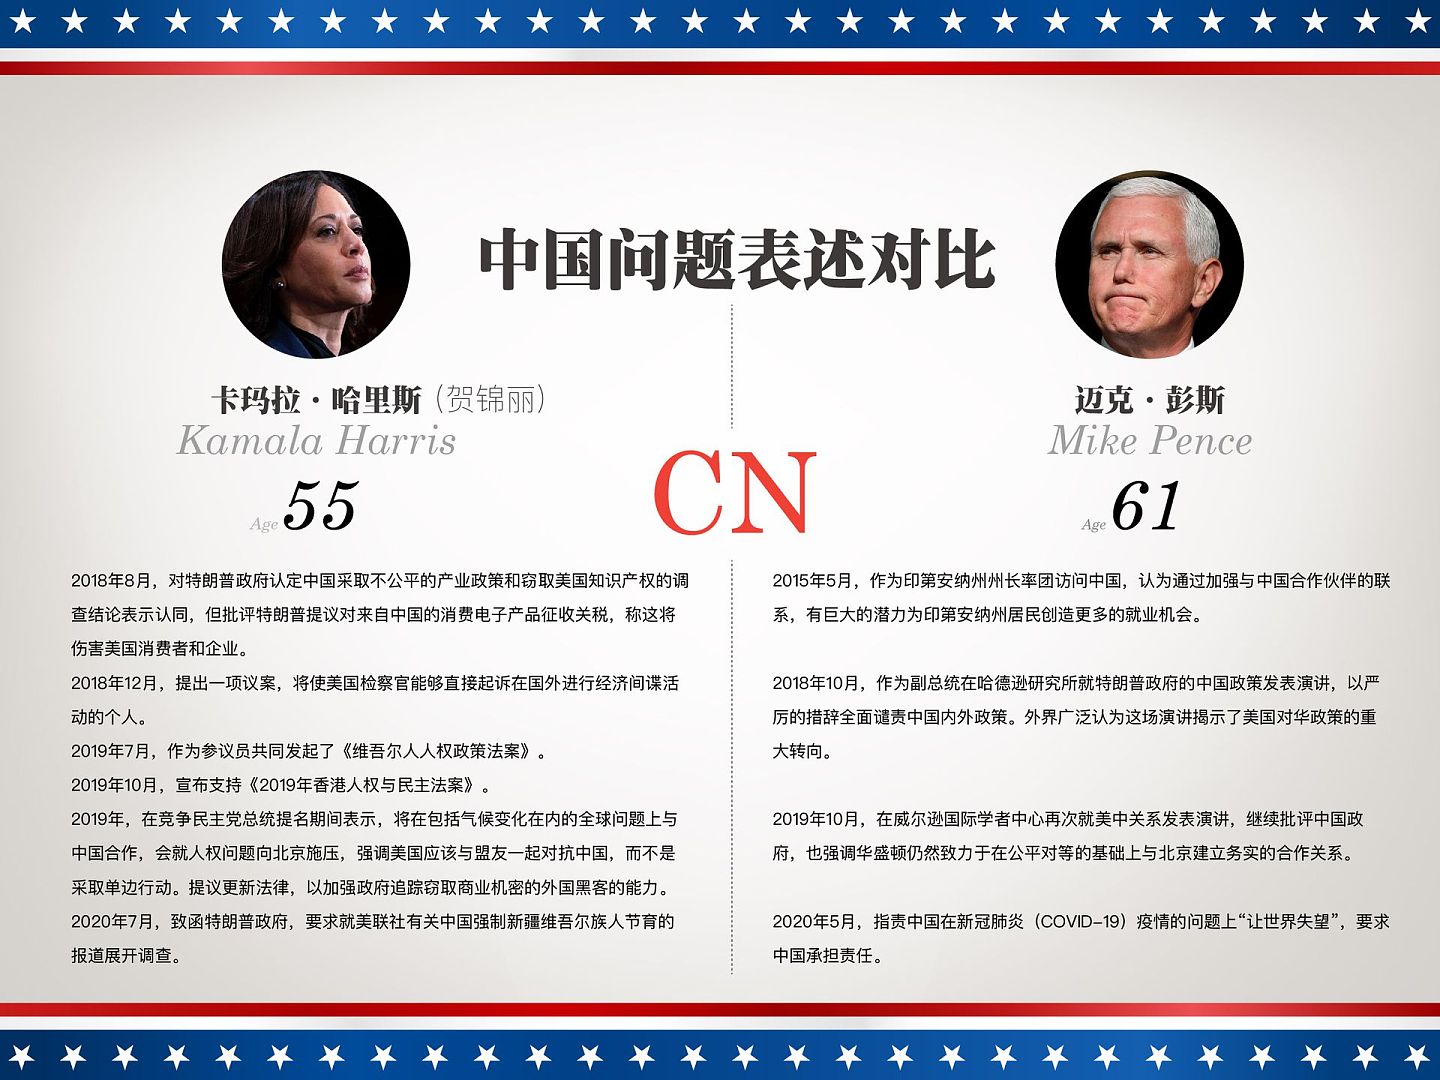 拜登竞选搭档贺锦丽与美国副总统彭斯（Mike Pence）有关中国问题表述对比一览。（多维新闻制作）